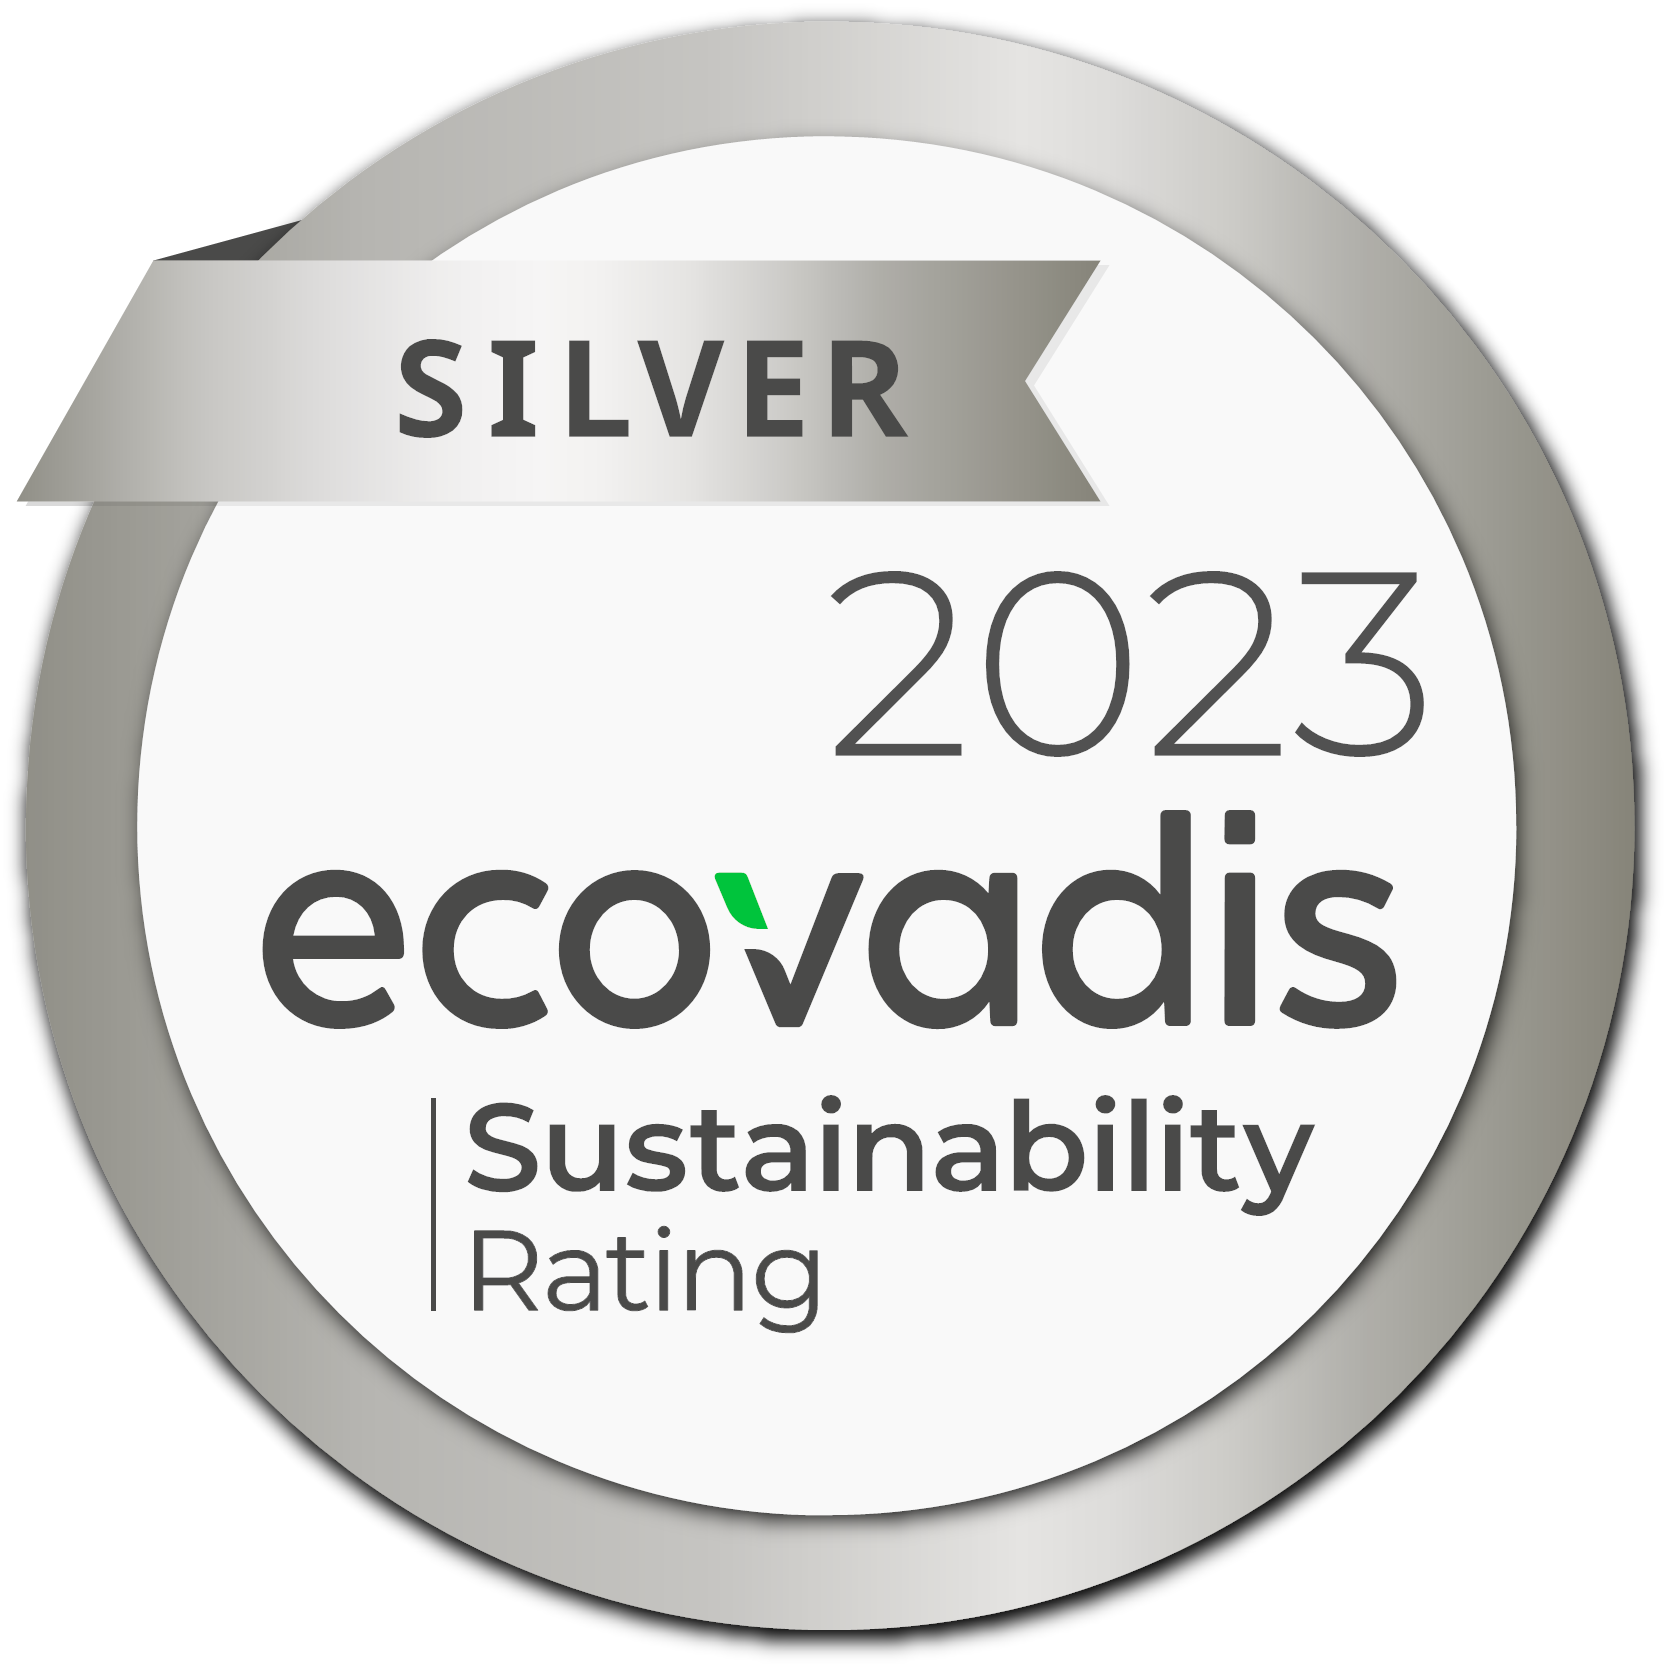 EcoVadisによるCSR評価でシルバーメダルを獲得しました。